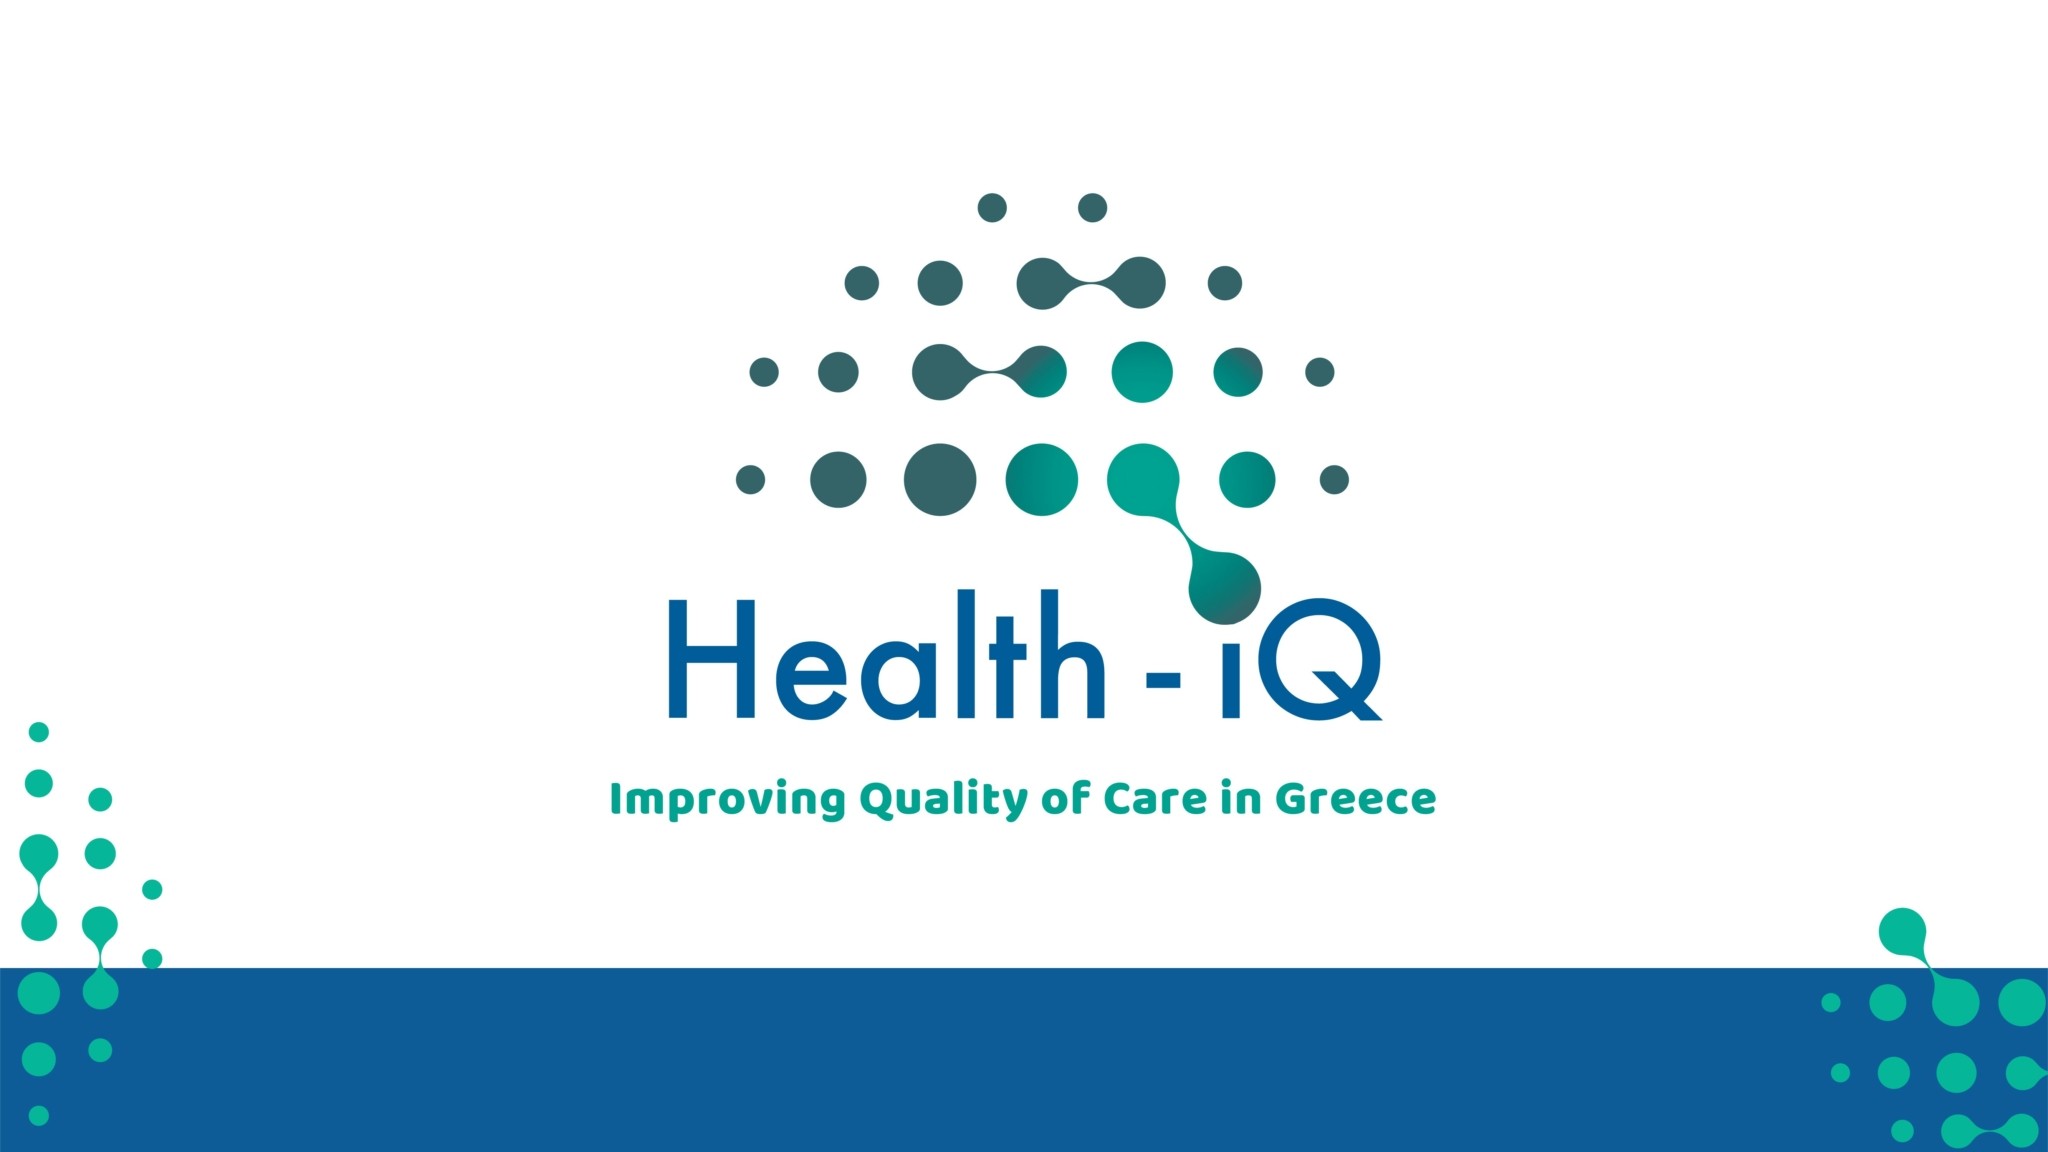 Νιάρχος: Εκδήλωση του Υπ. Υγείας και του ΠΟΥ/Ευρώπης για την έναρξη του προγράμματος «Health-IQ» στις 16/2